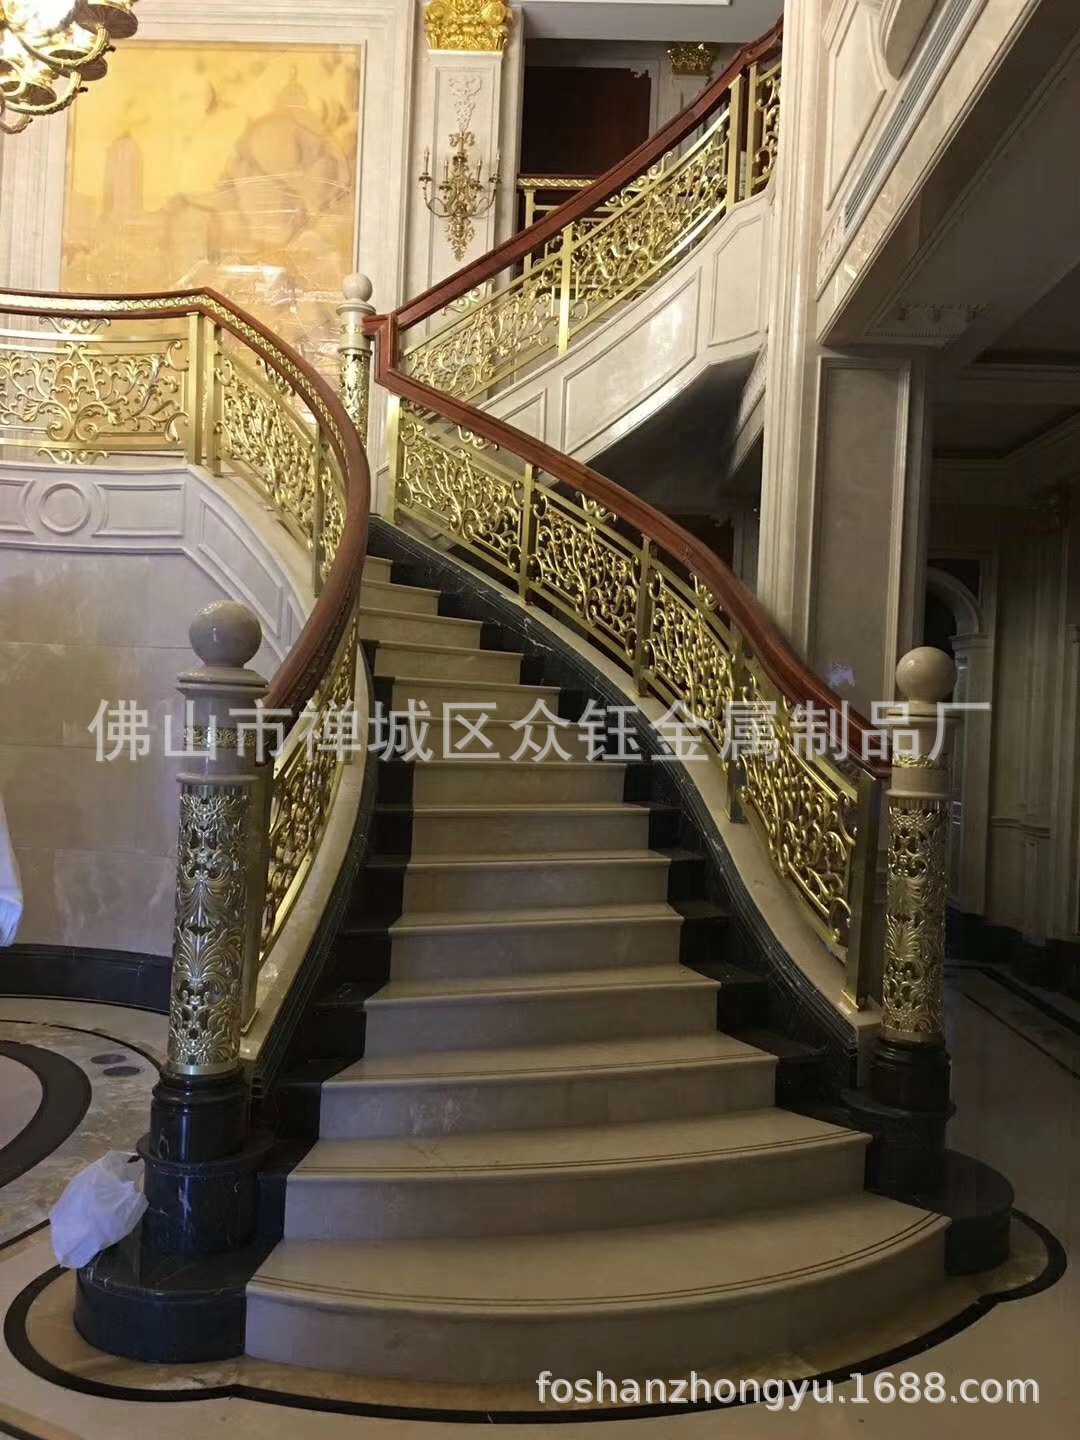 贵族世家的楼梯铜艺浮雕镀金护栏立体浮雕刻24K金护栏门第象征示例图5